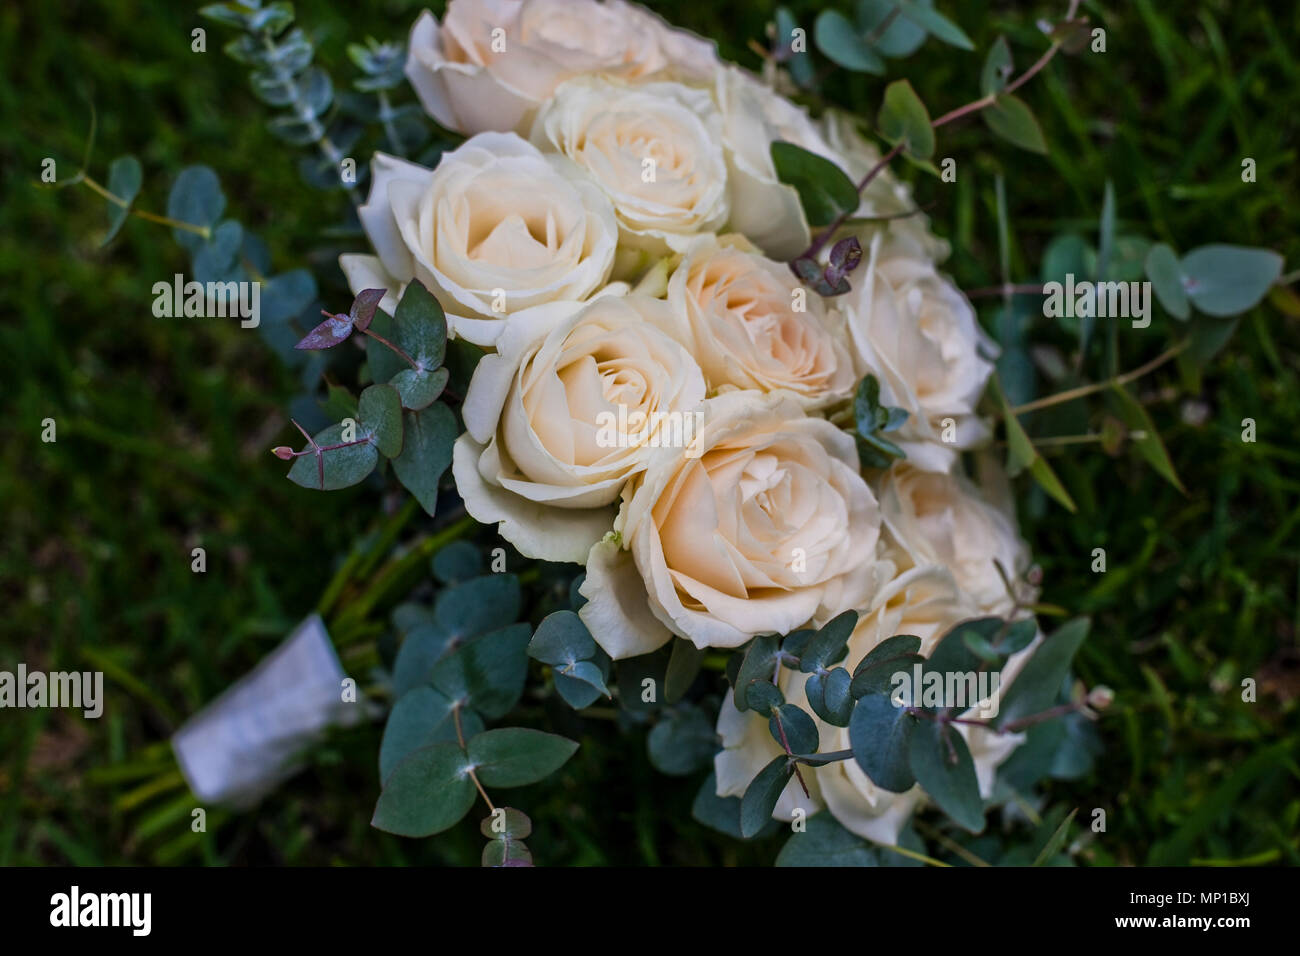 stunning delicate roses pastel colours white cream pink rose petals fresh bouquet arrangement bride vintage Stock Photo